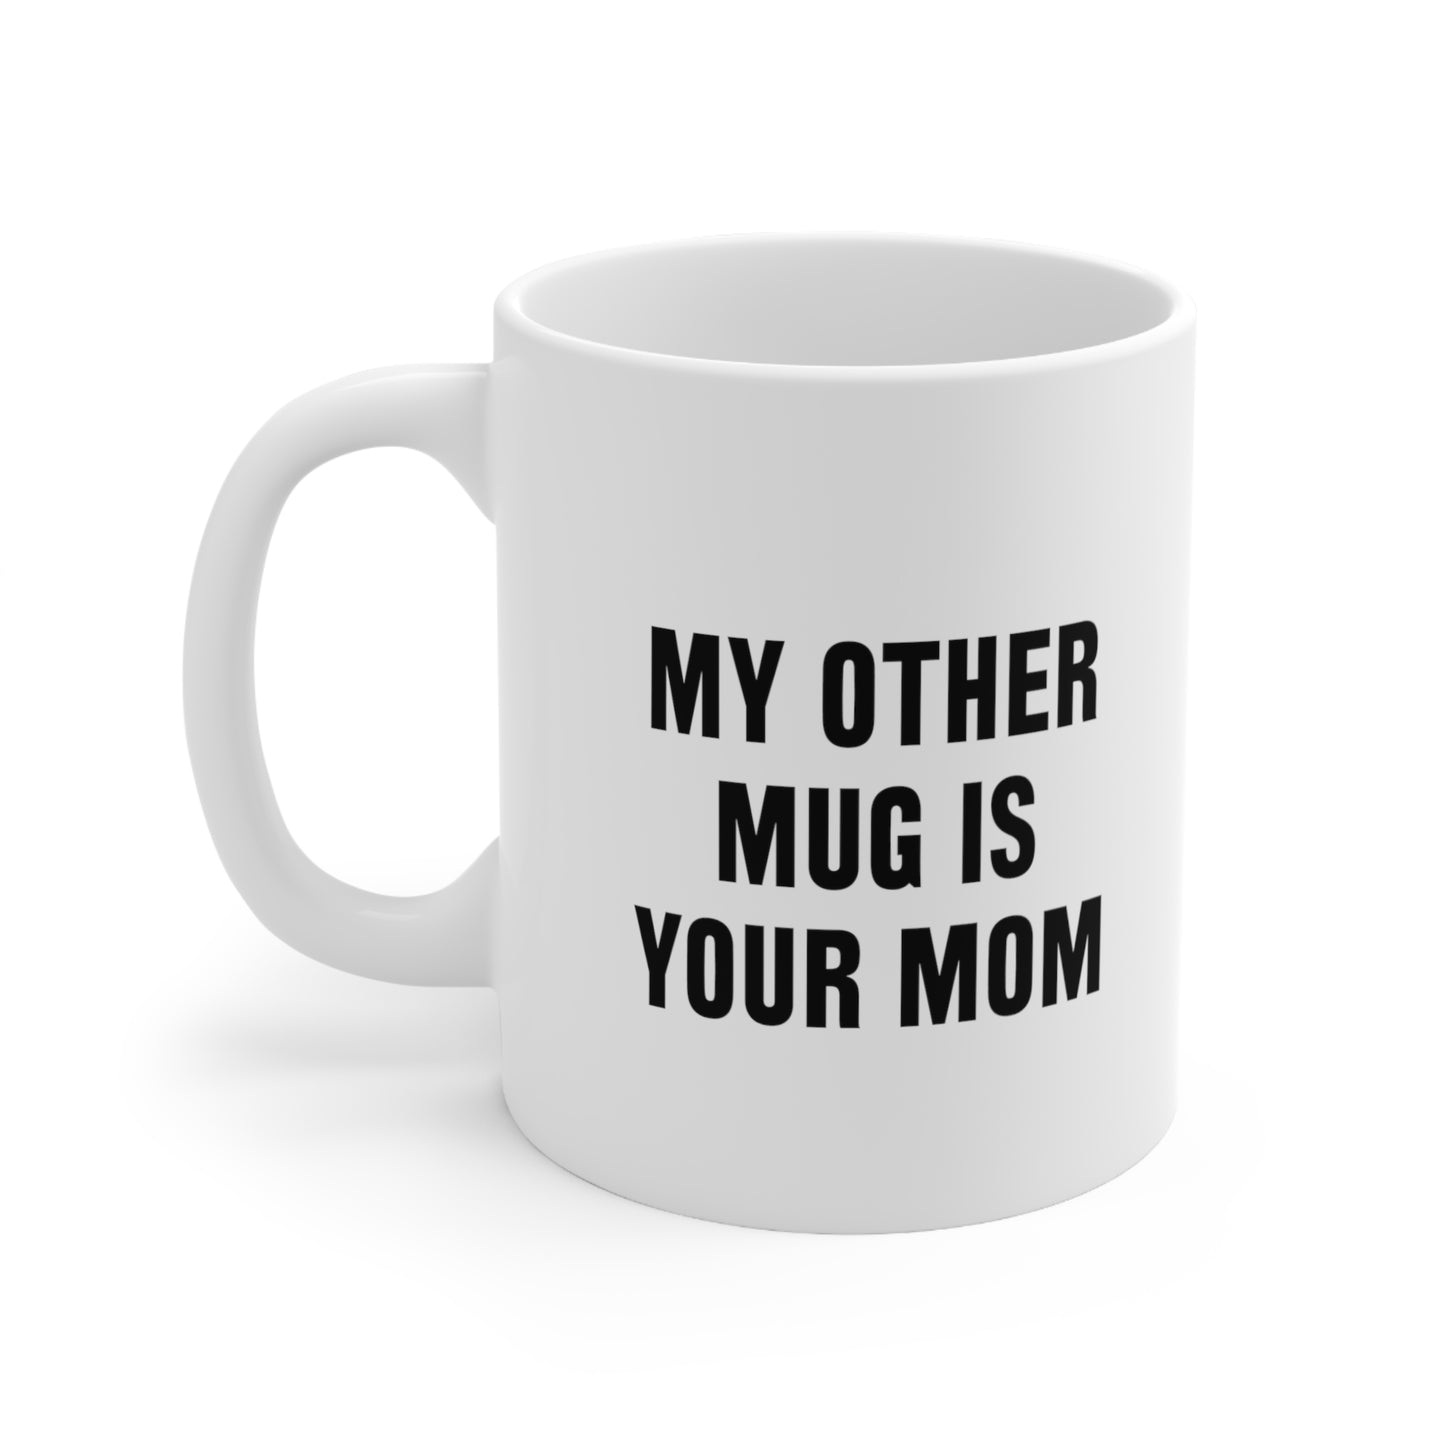 My Other Mug Is Your Mom Coffee Mug